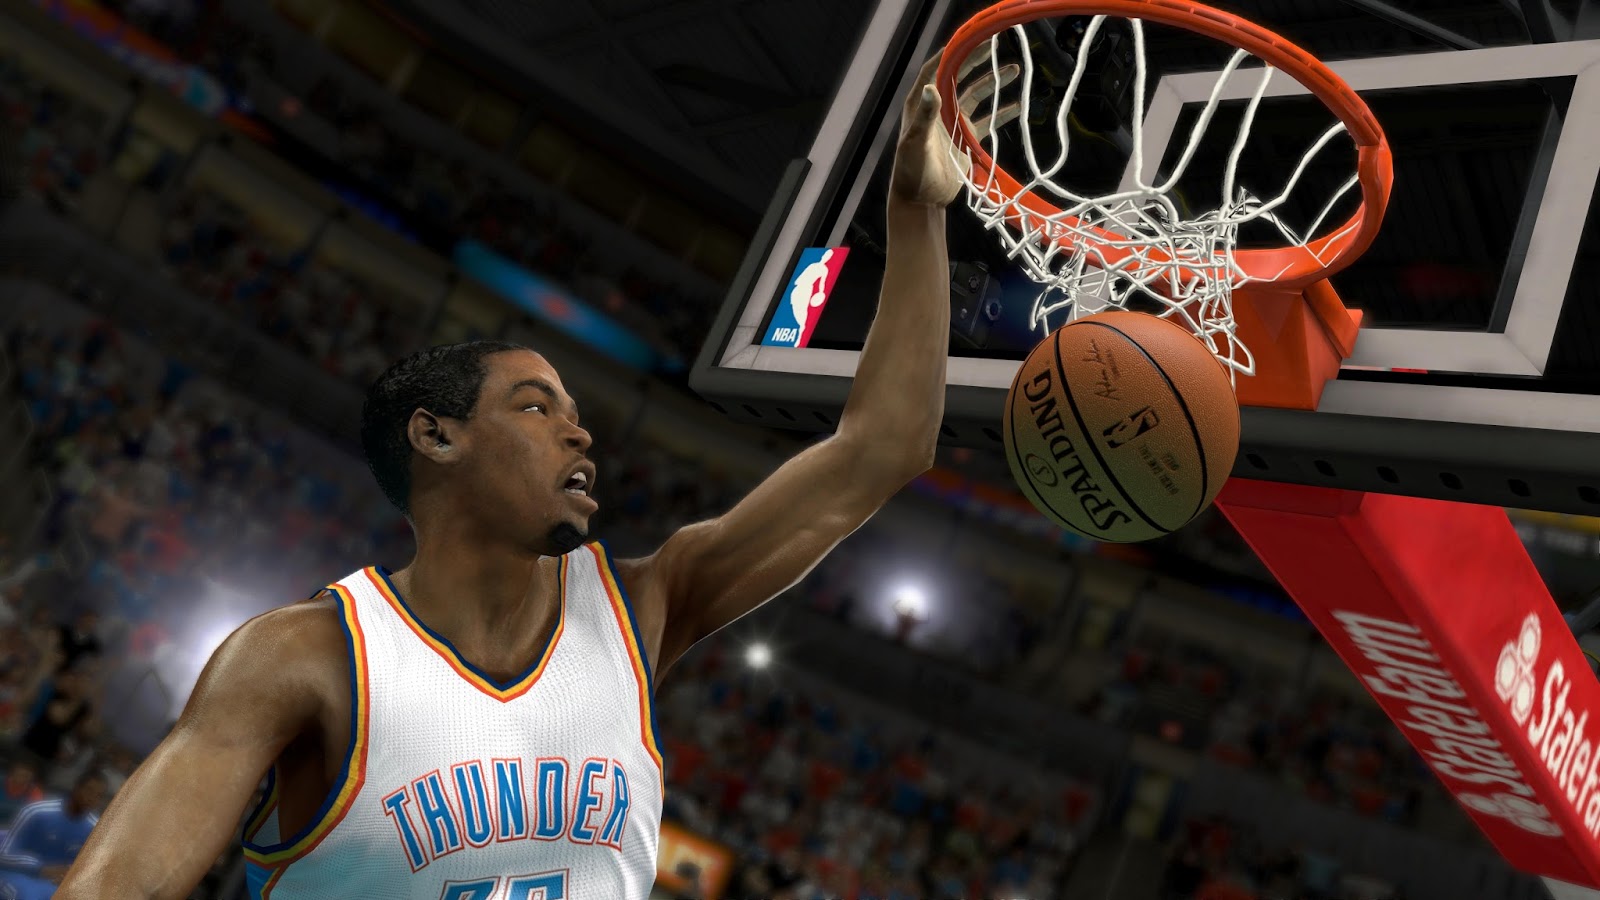 NBA 2k15 free download pc game full version | free ...